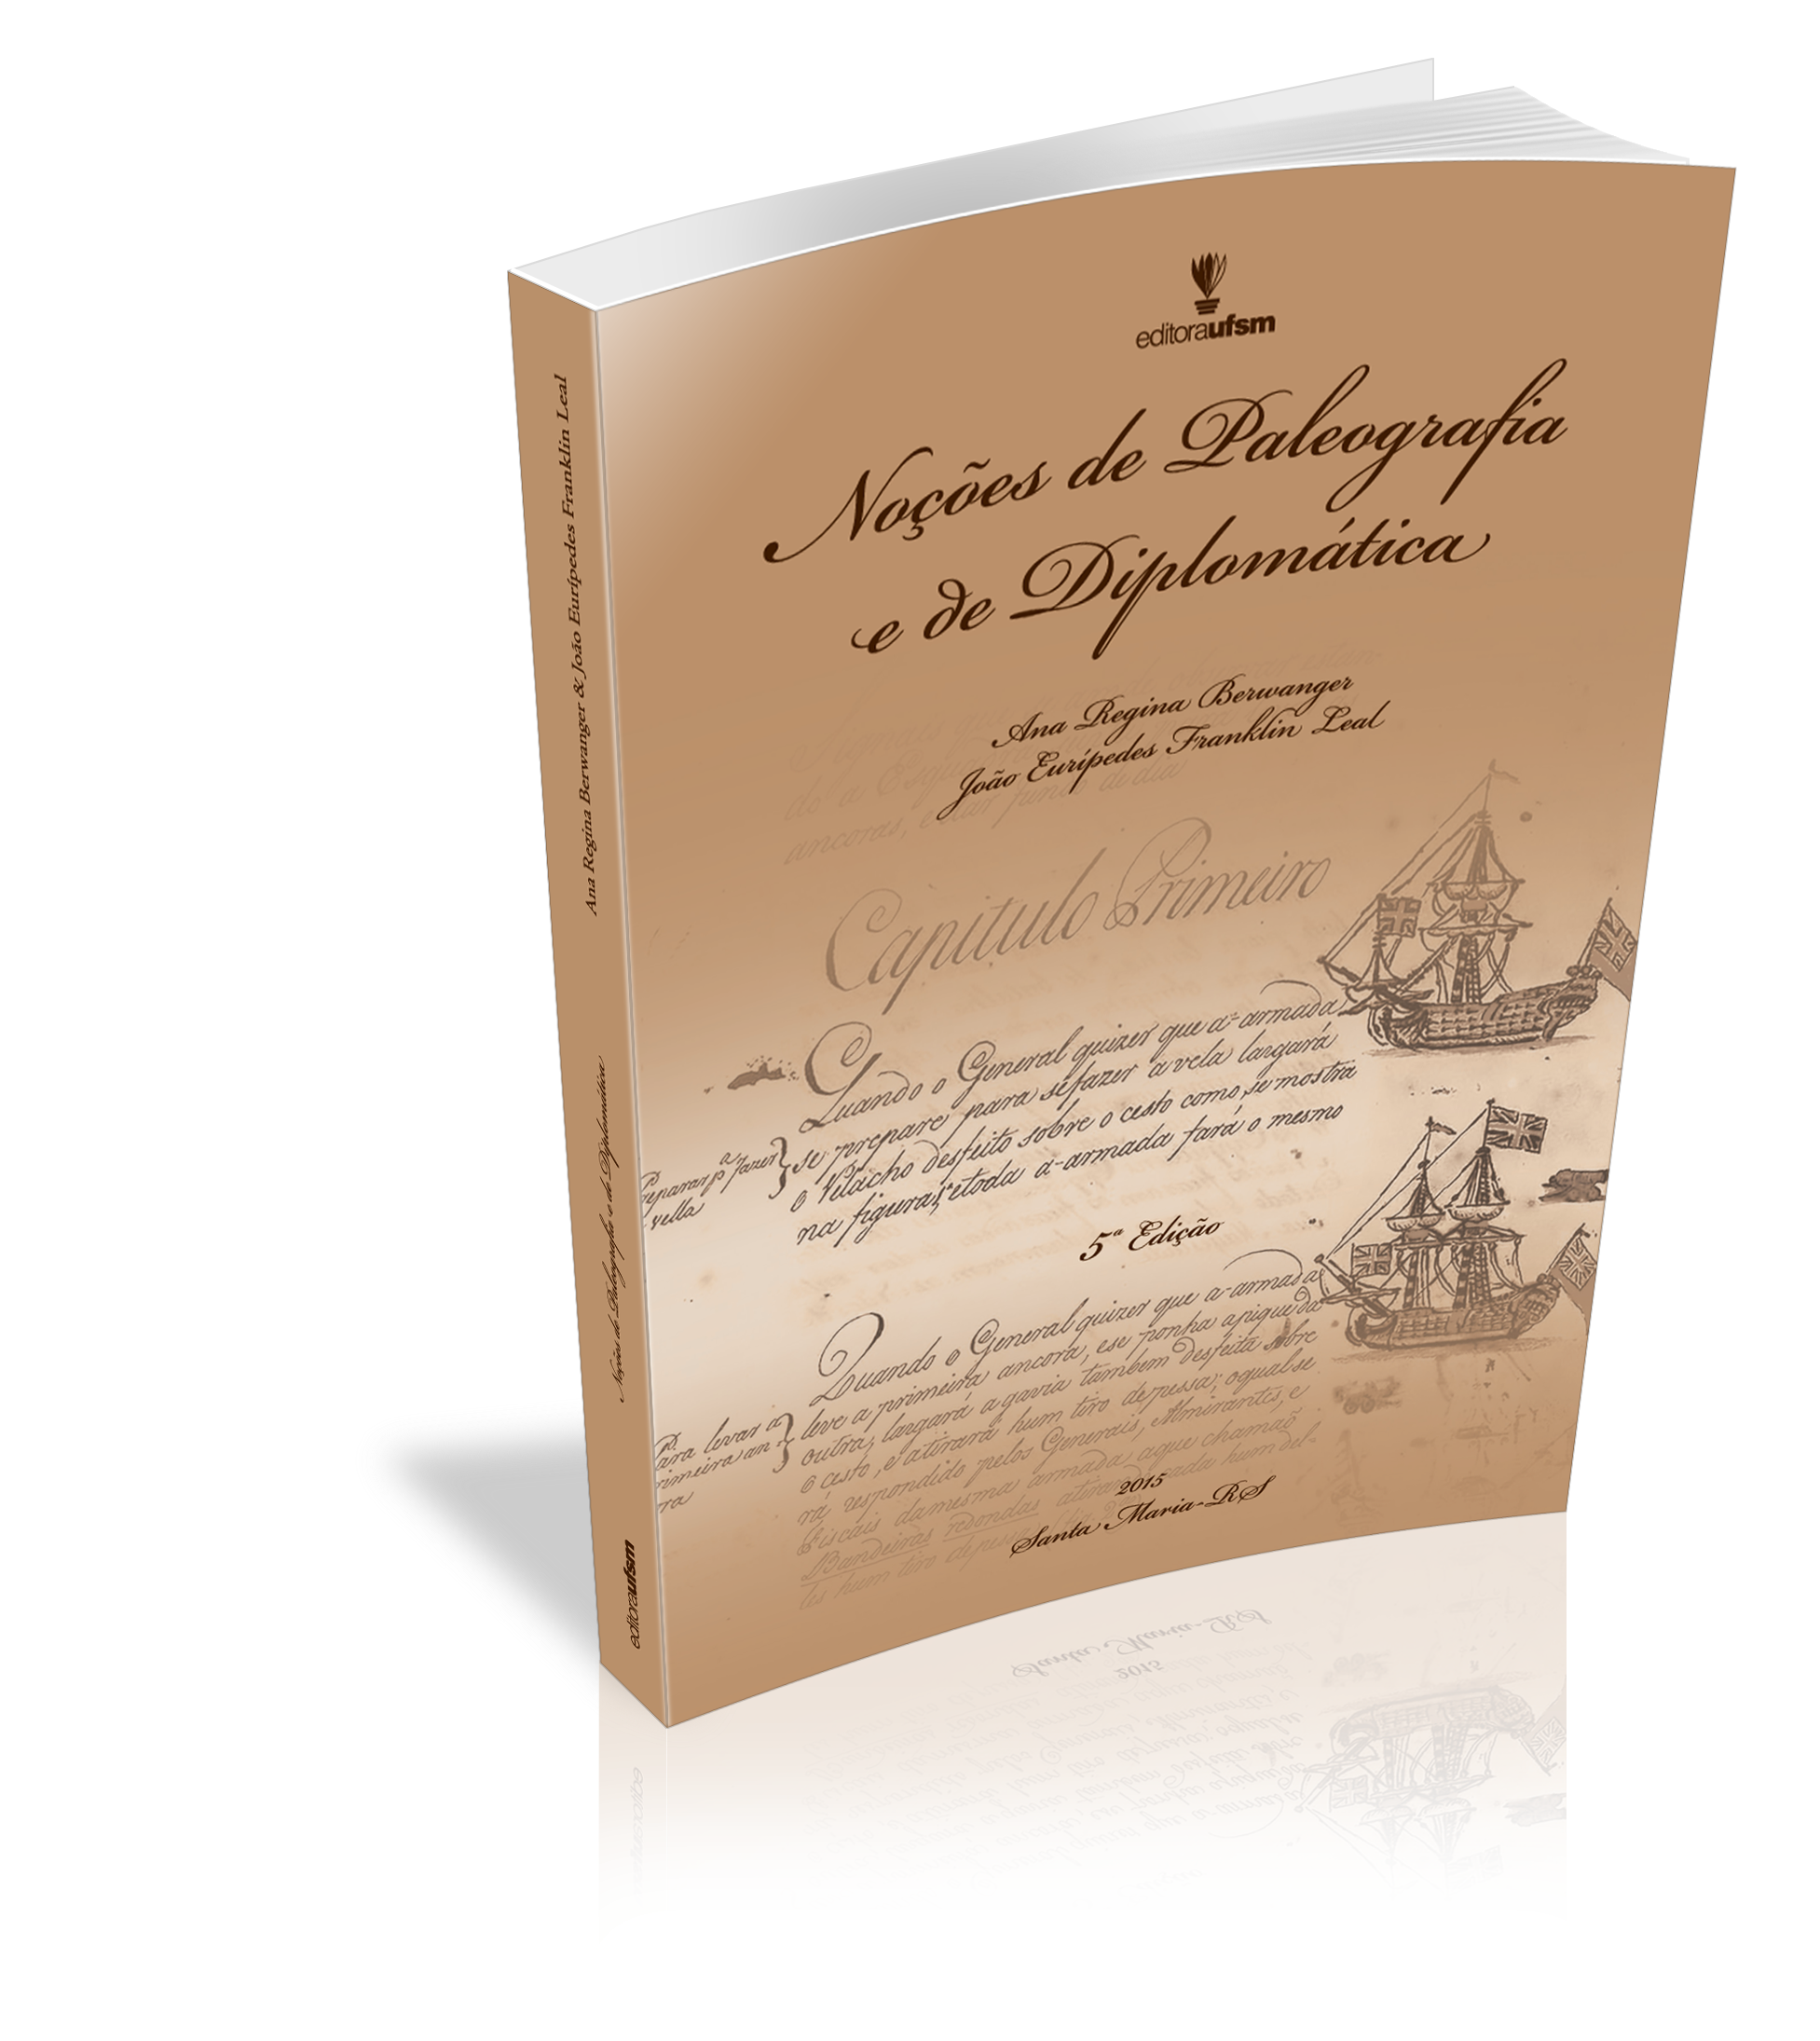 Capa do livro Noções de Paleografia e de Diplomática